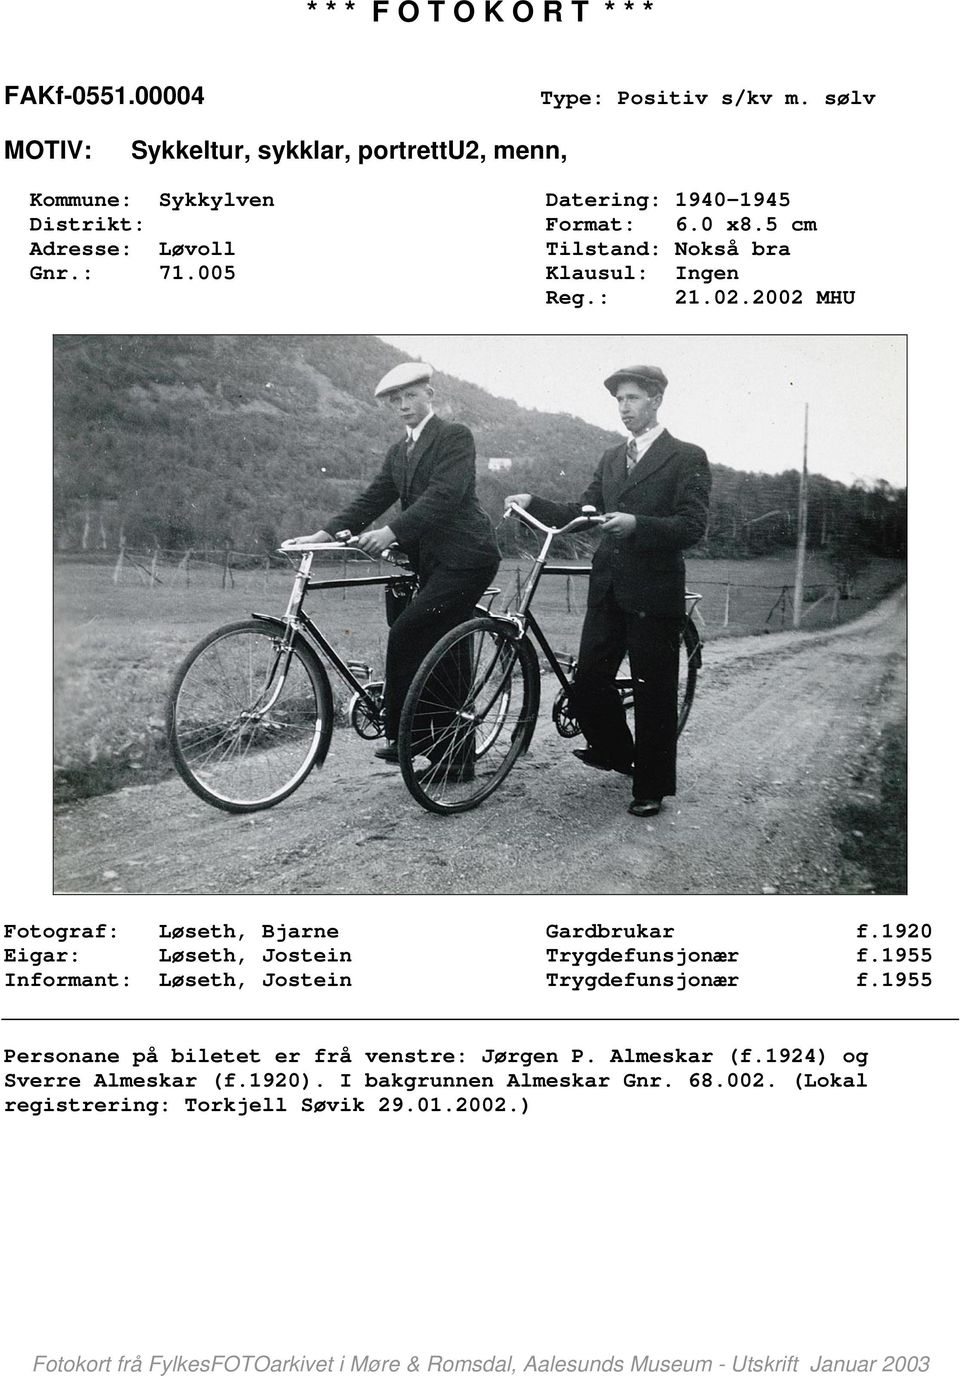 1920 Eigar: Løseth, Jostein Trygdefunsjonær f.1955 Informant: Løseth, Jostein Trygdefunsjonær f.